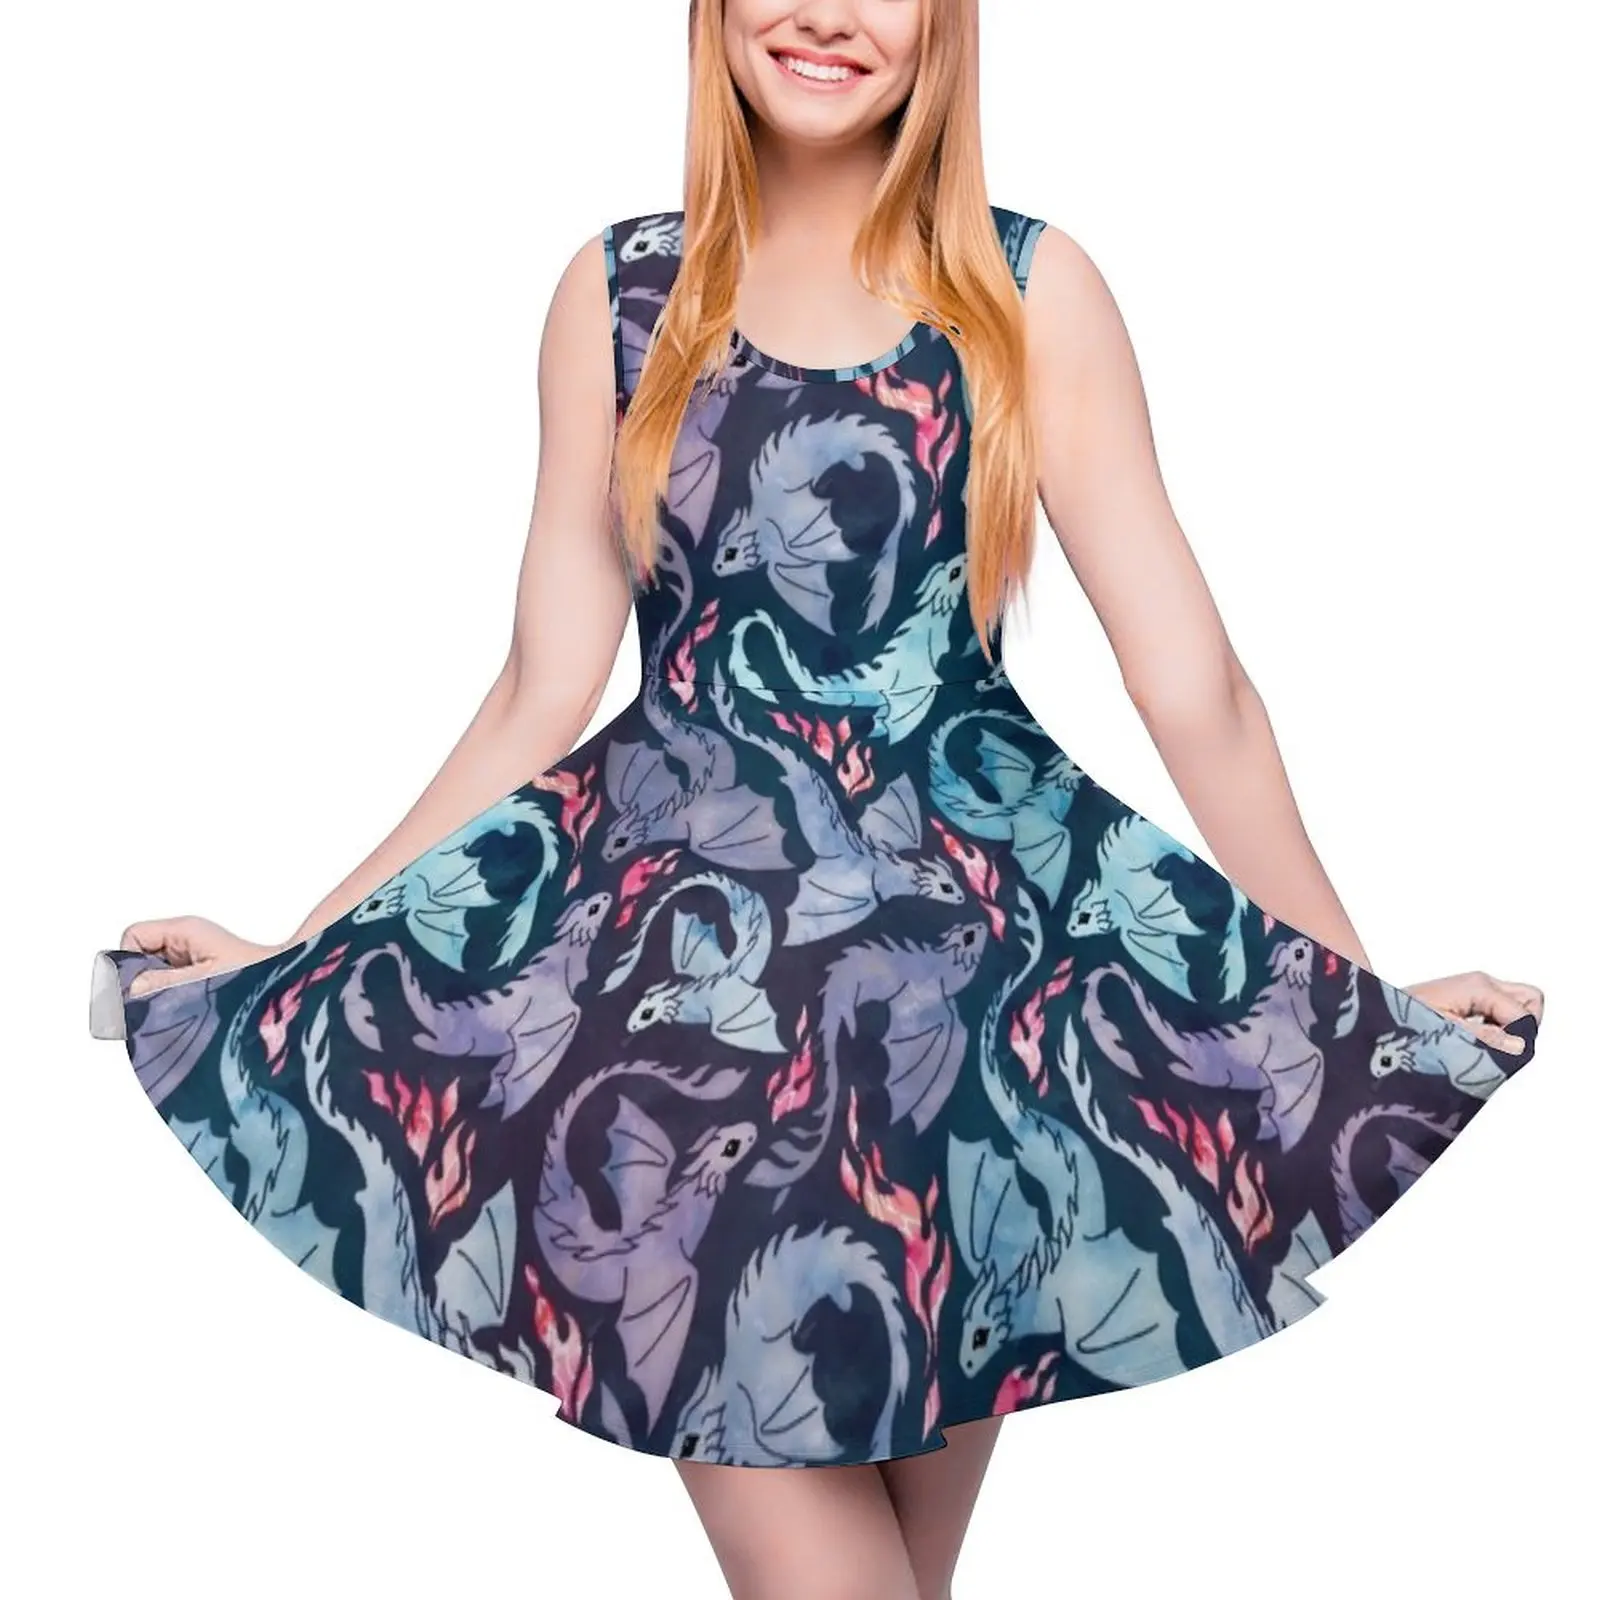 

Женское платье без рукавов Dragon fire, темно-бирюзовое И фиолетовое официальное платье, летняя одежда